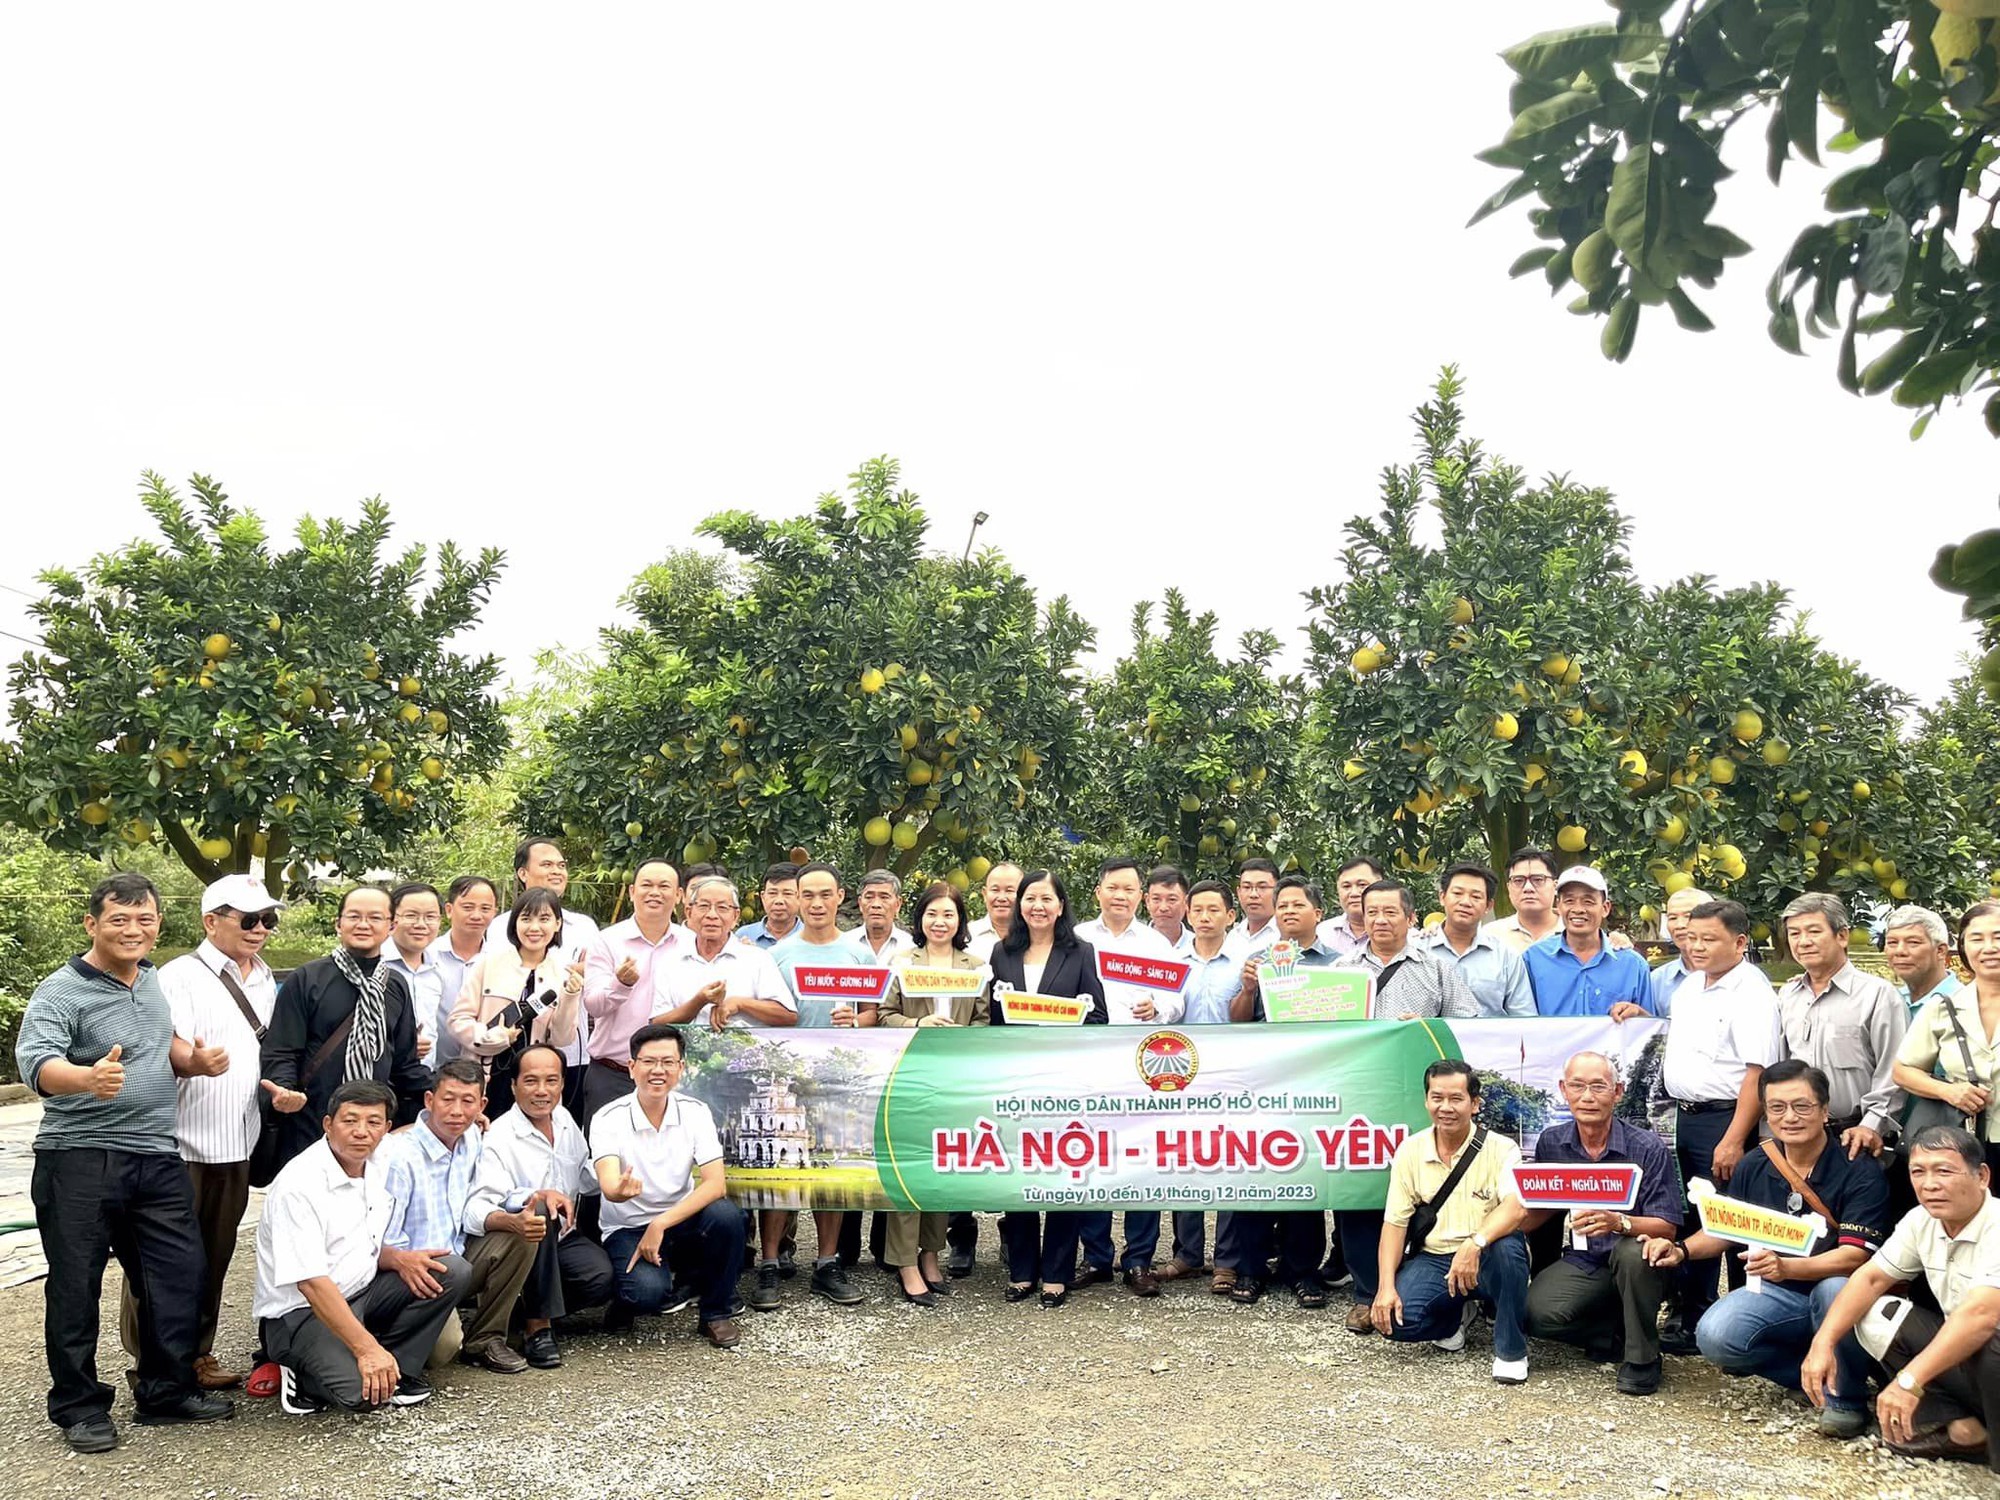 Hội nông dân TP.HCM tham quan, học tập nông nghiệp công nghệ cao tại Hà Nội, Hưng Yên - Ảnh 1.